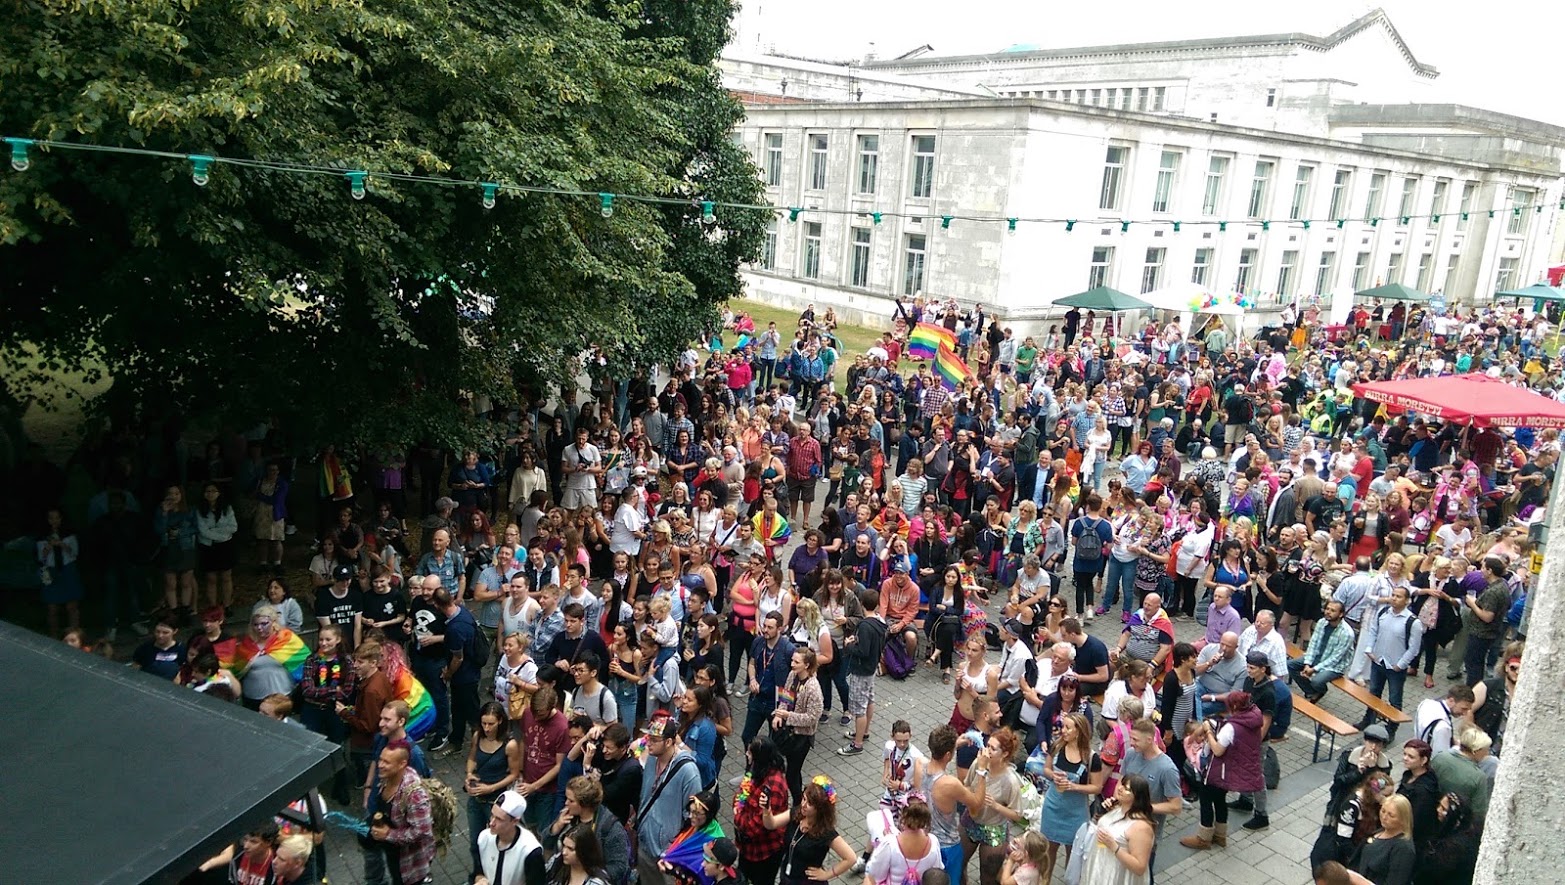 Southampton Pride event